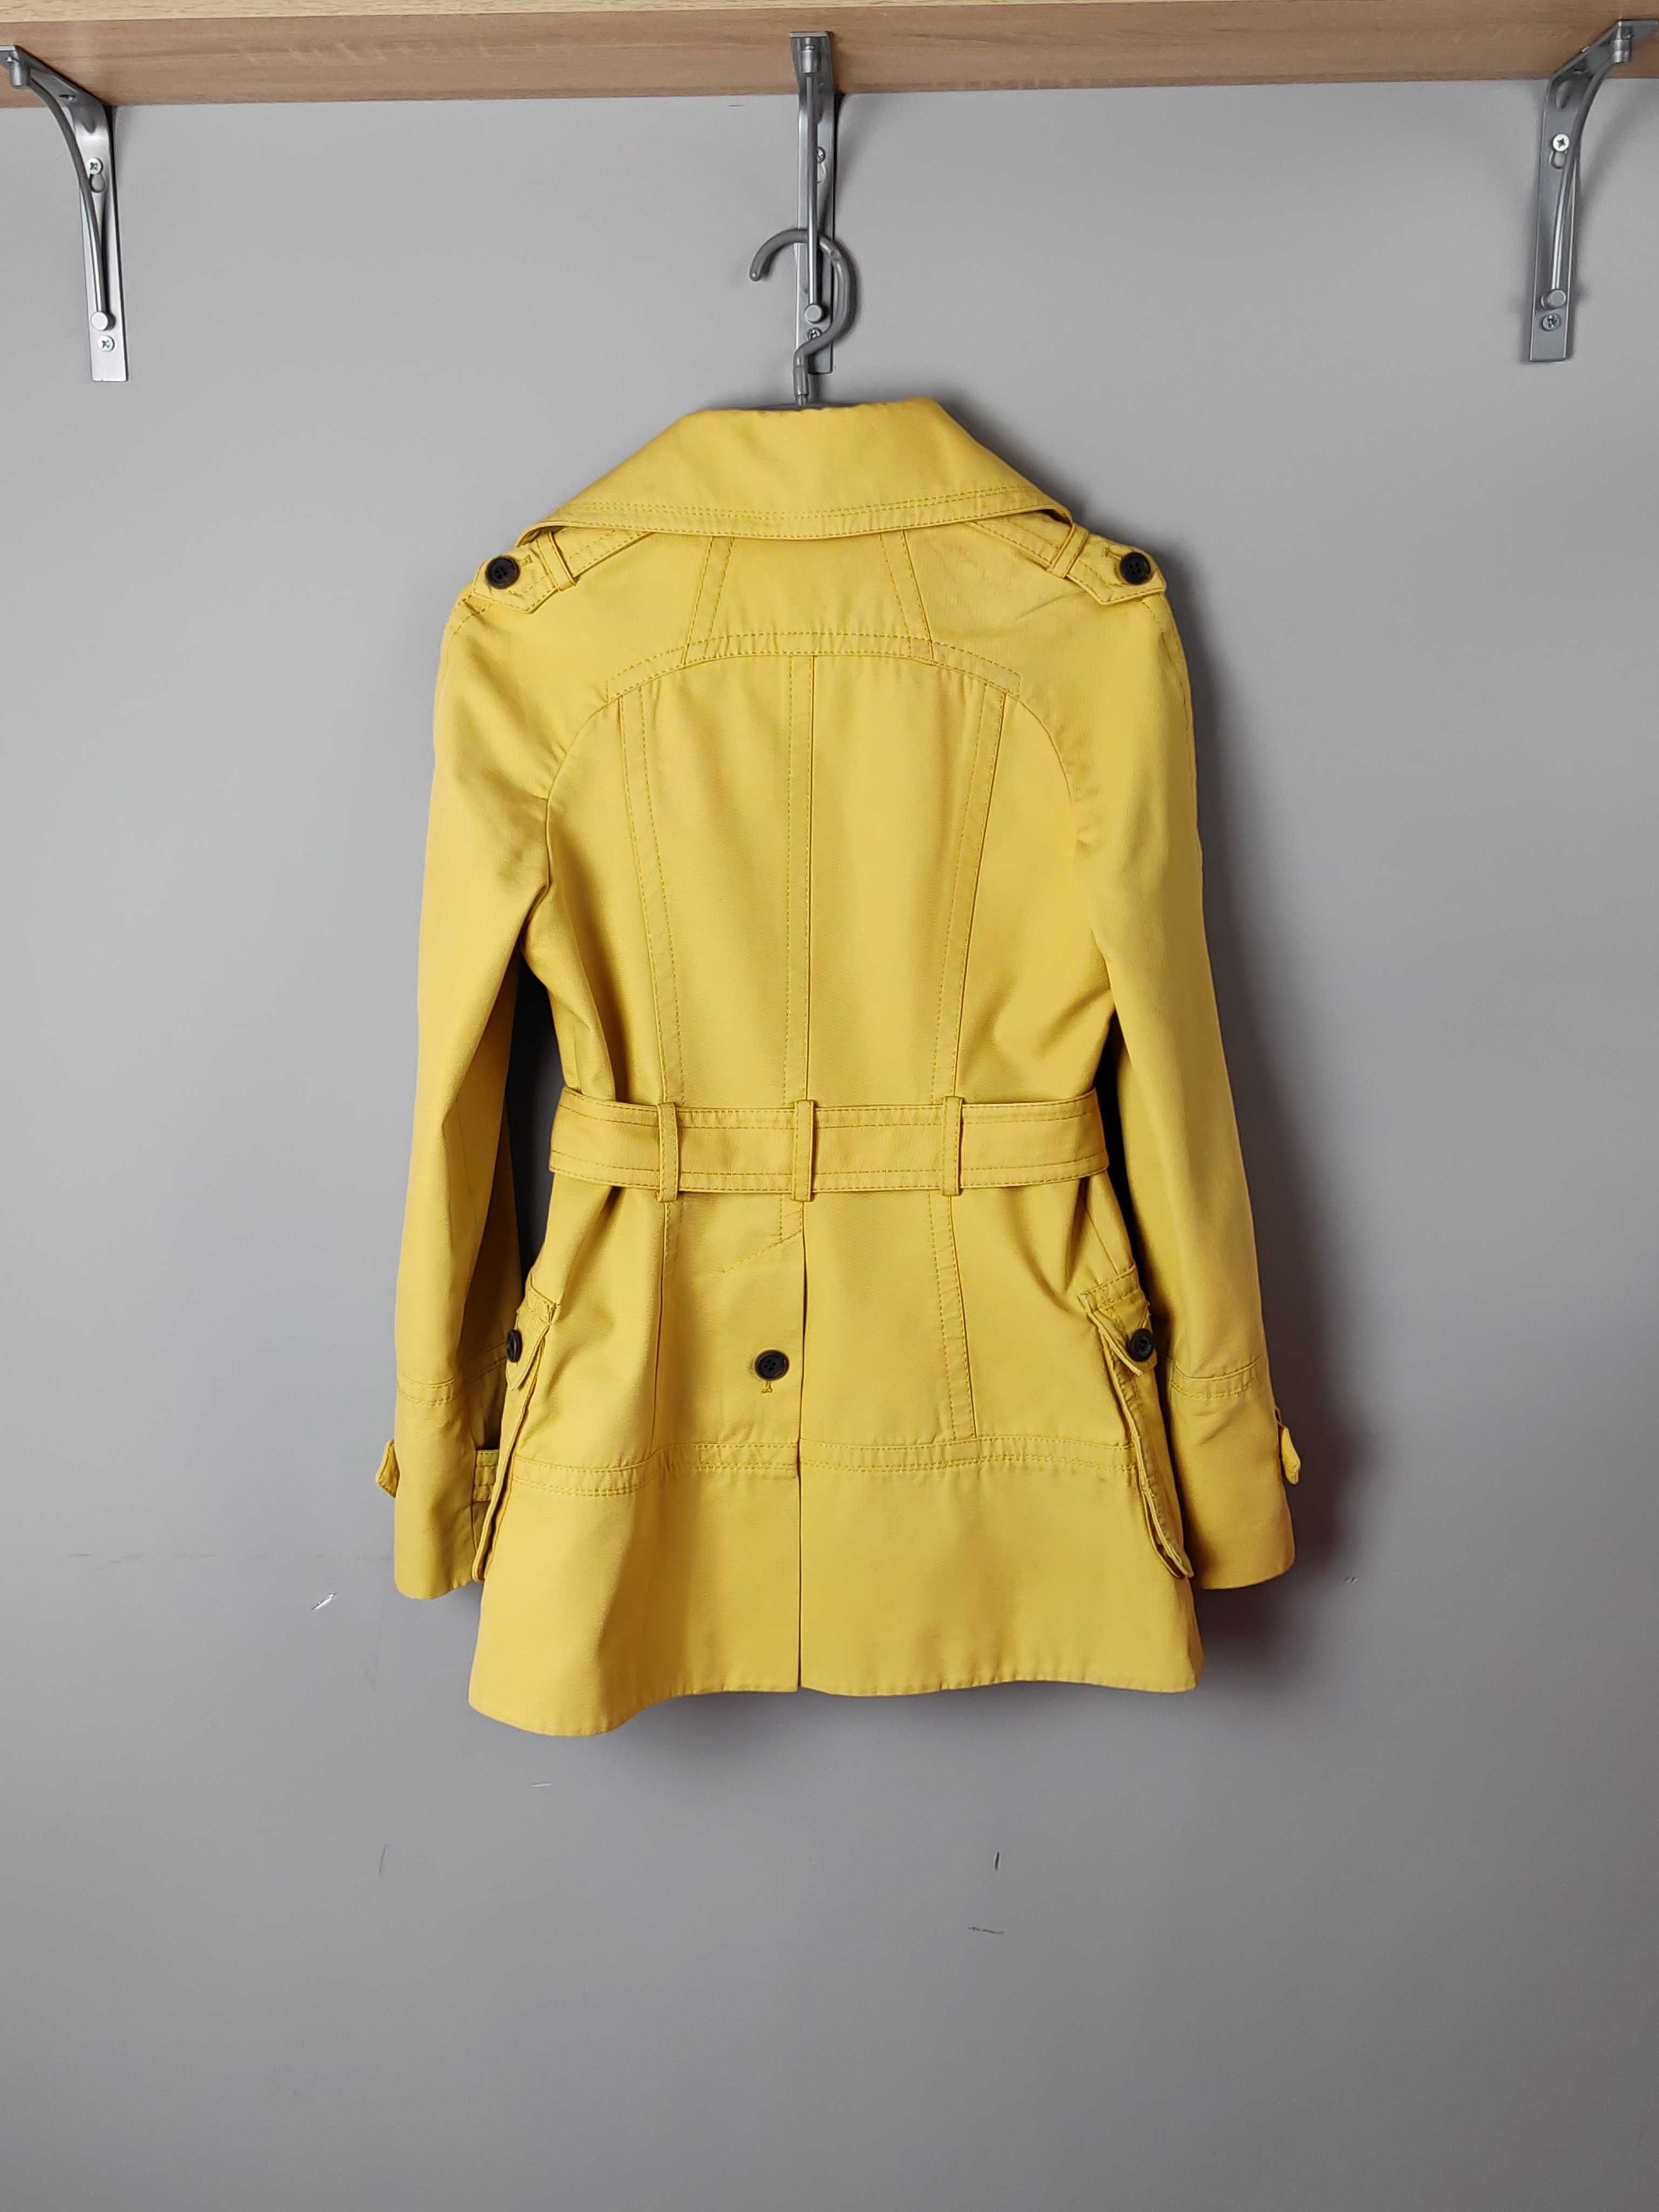 Płaszcz trencz żółty krótki markowy pasek podszewka Karen Millen 38